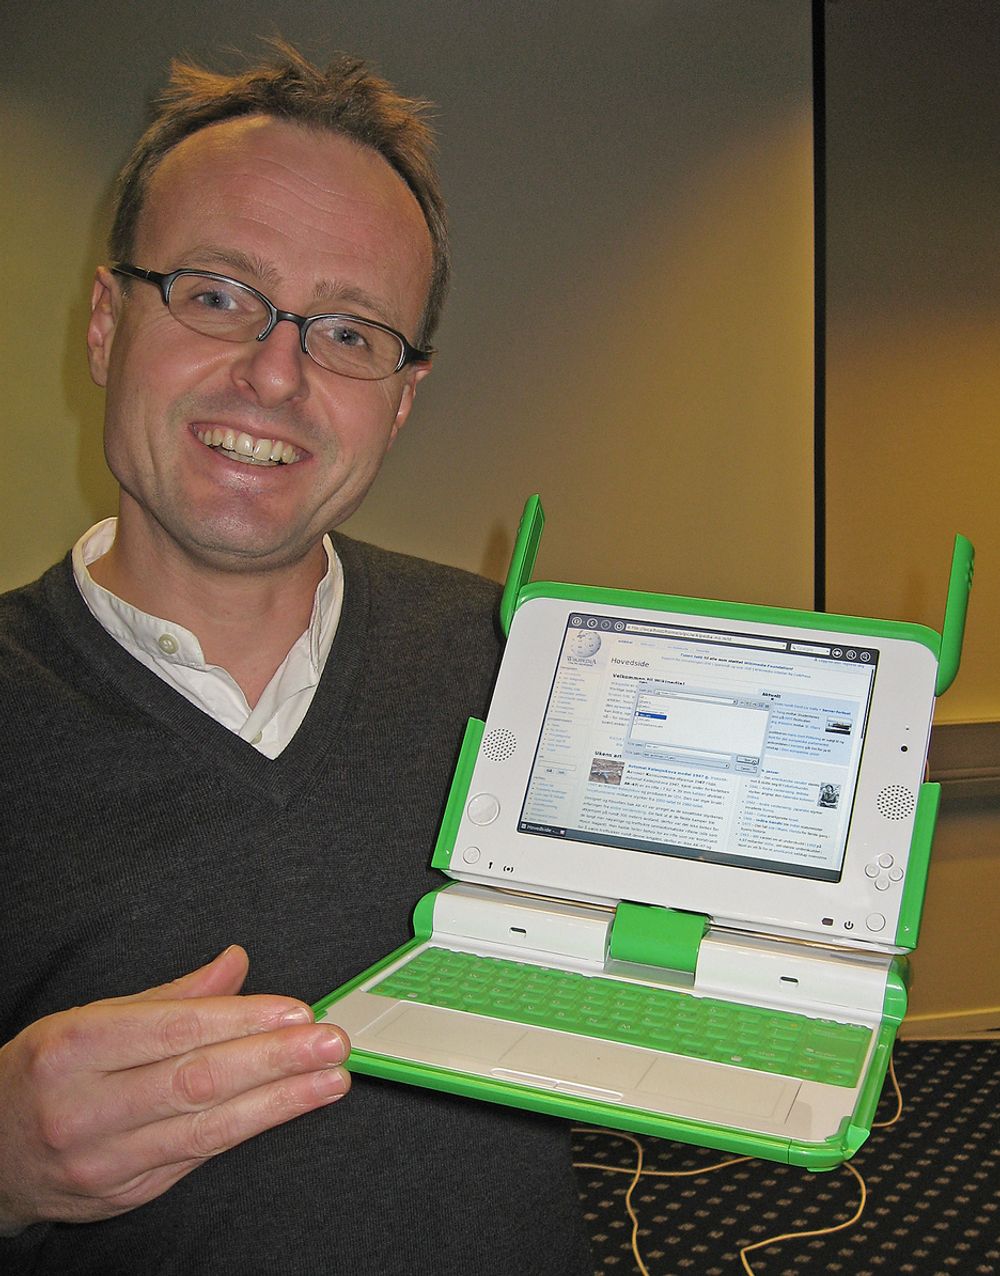 Håkon Wium Lie, Opera Software.